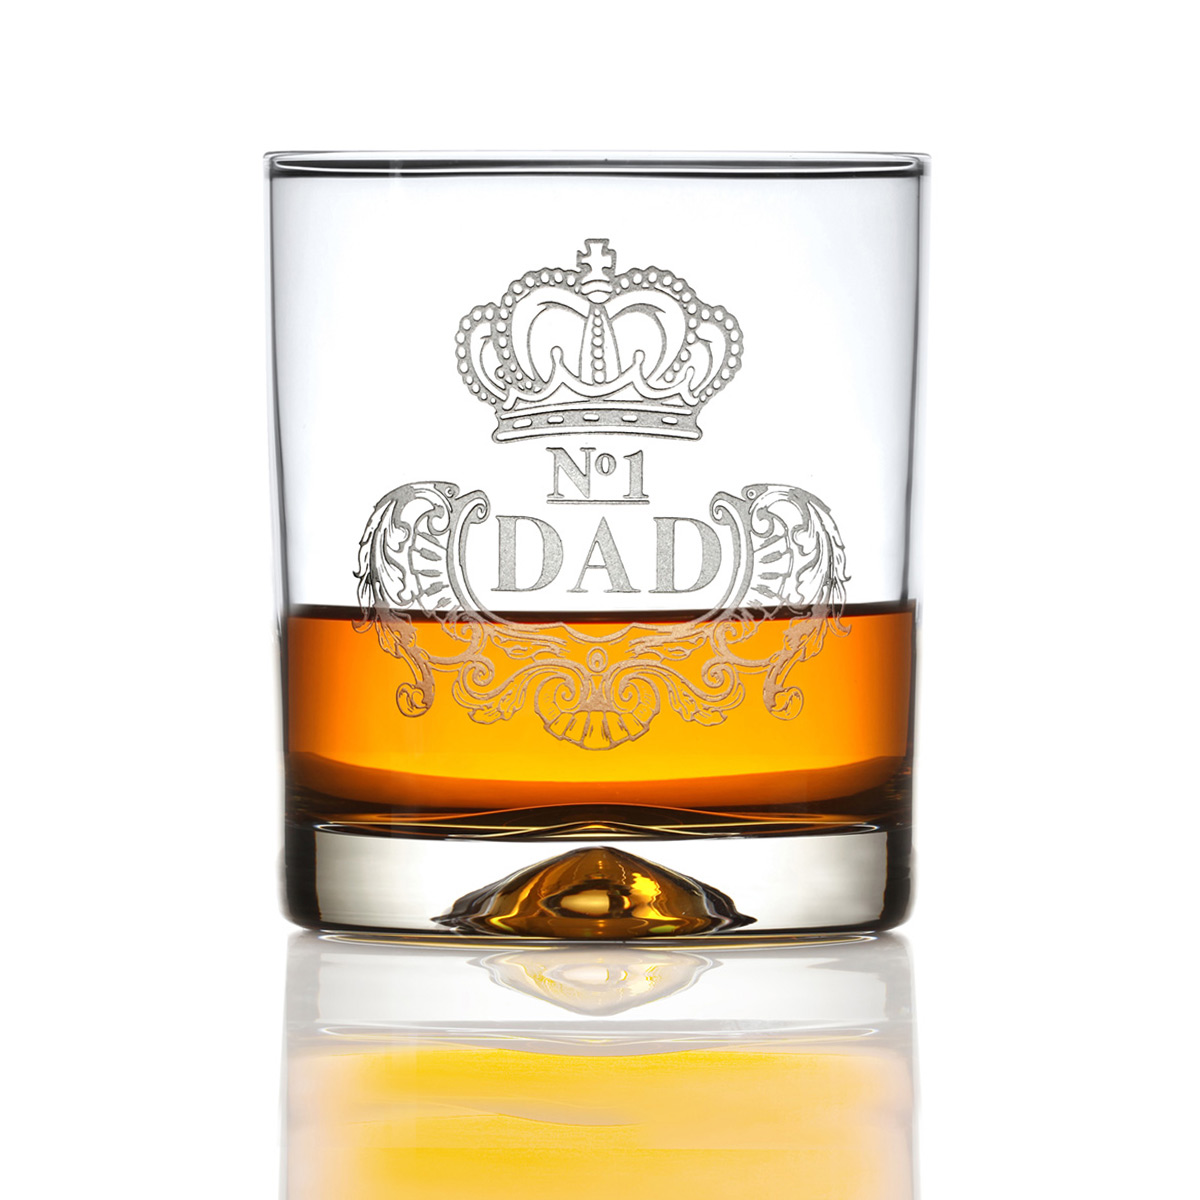 No.1 DAD - Handgefertigter Whisky Tumbler aus Kristallglas mit Gravur